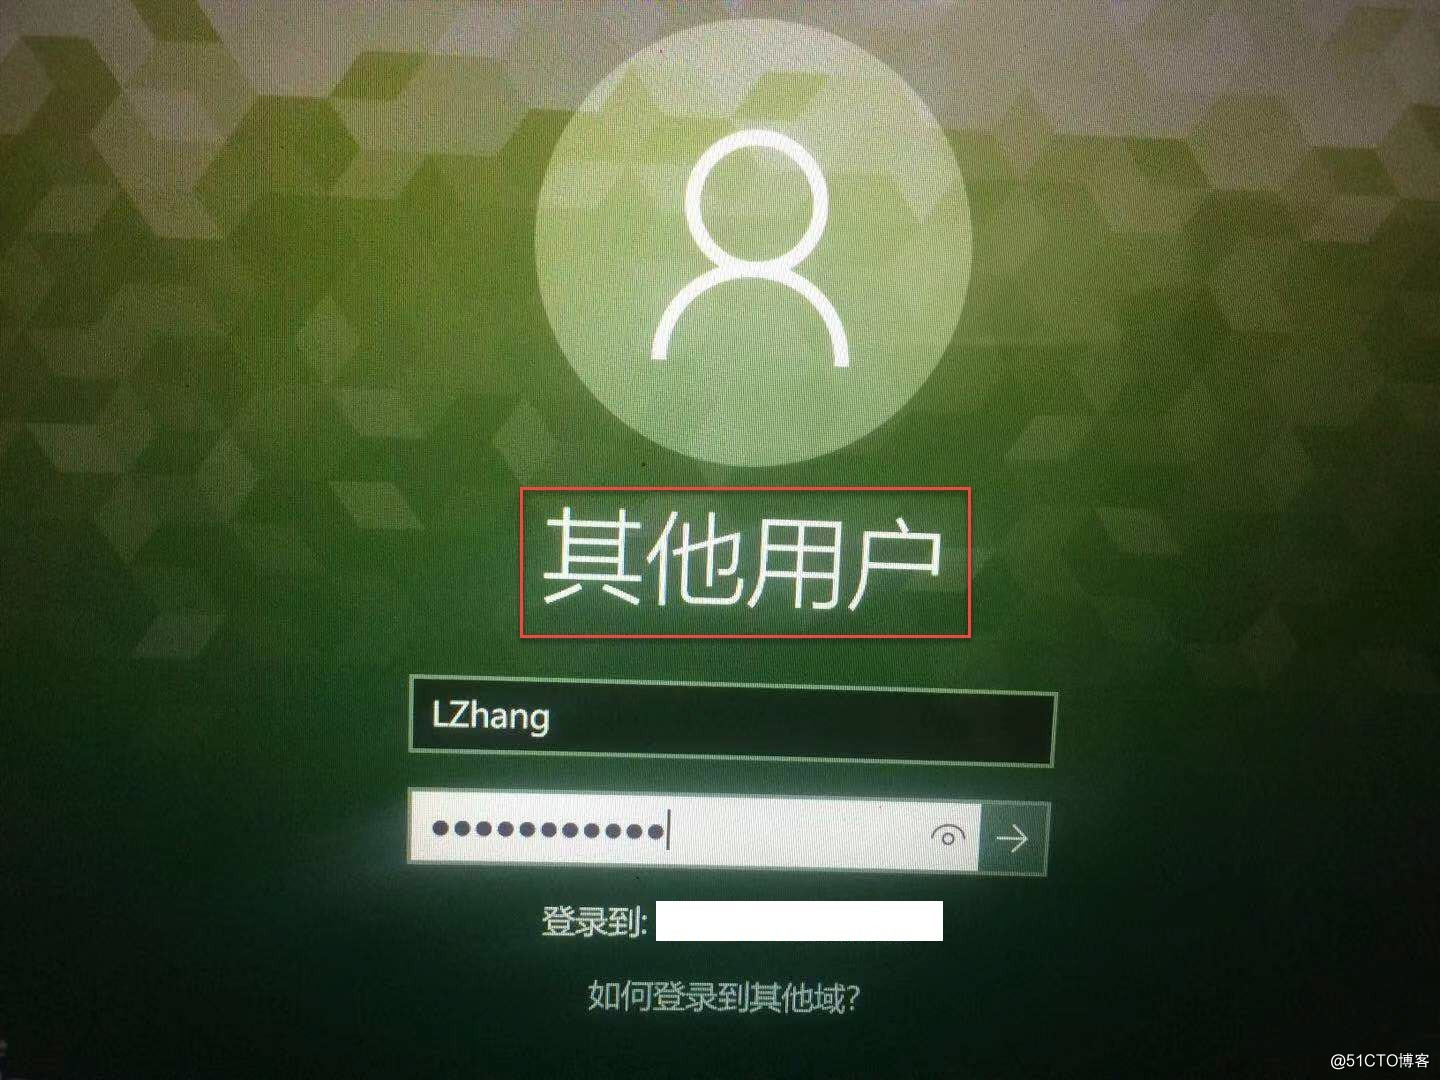 如何解决win10启动和登陆界面语言中英文混合显示 Lander Zhang 51cto博客